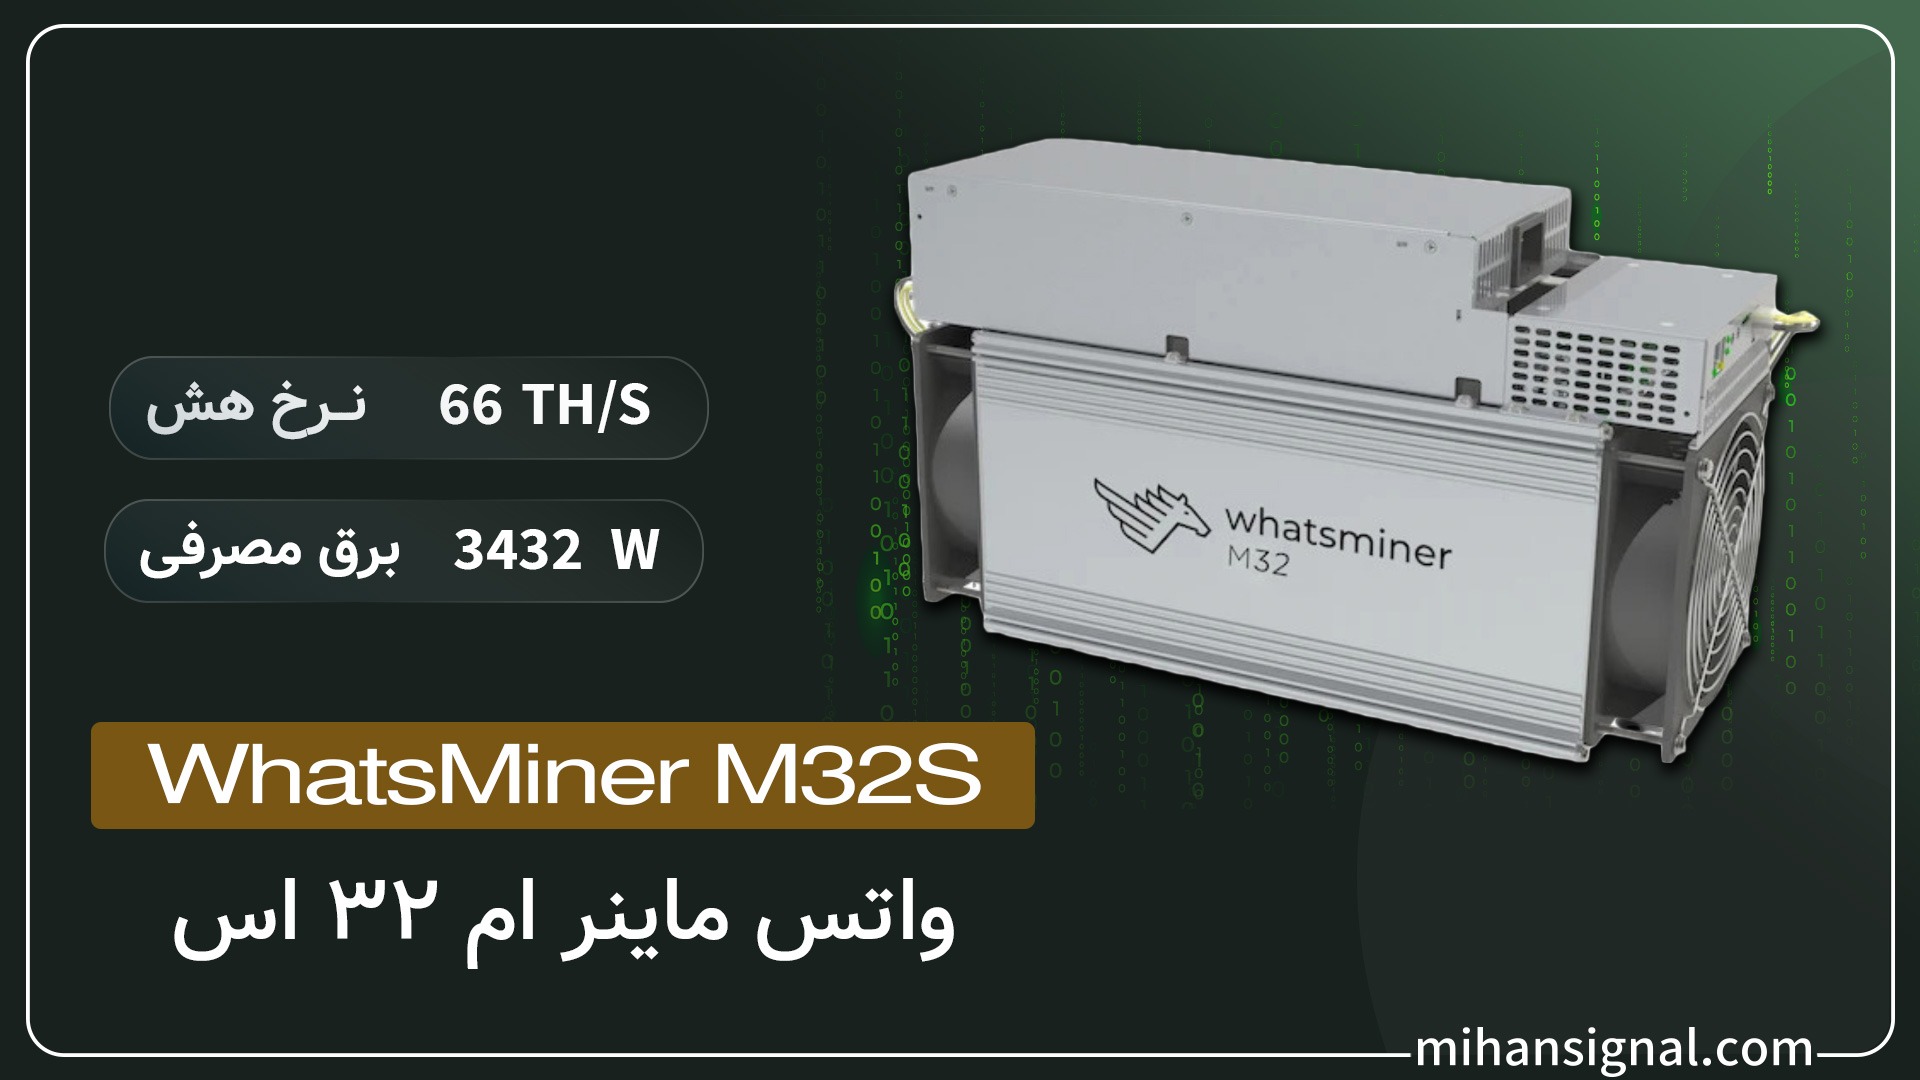 Whatsminer M32s